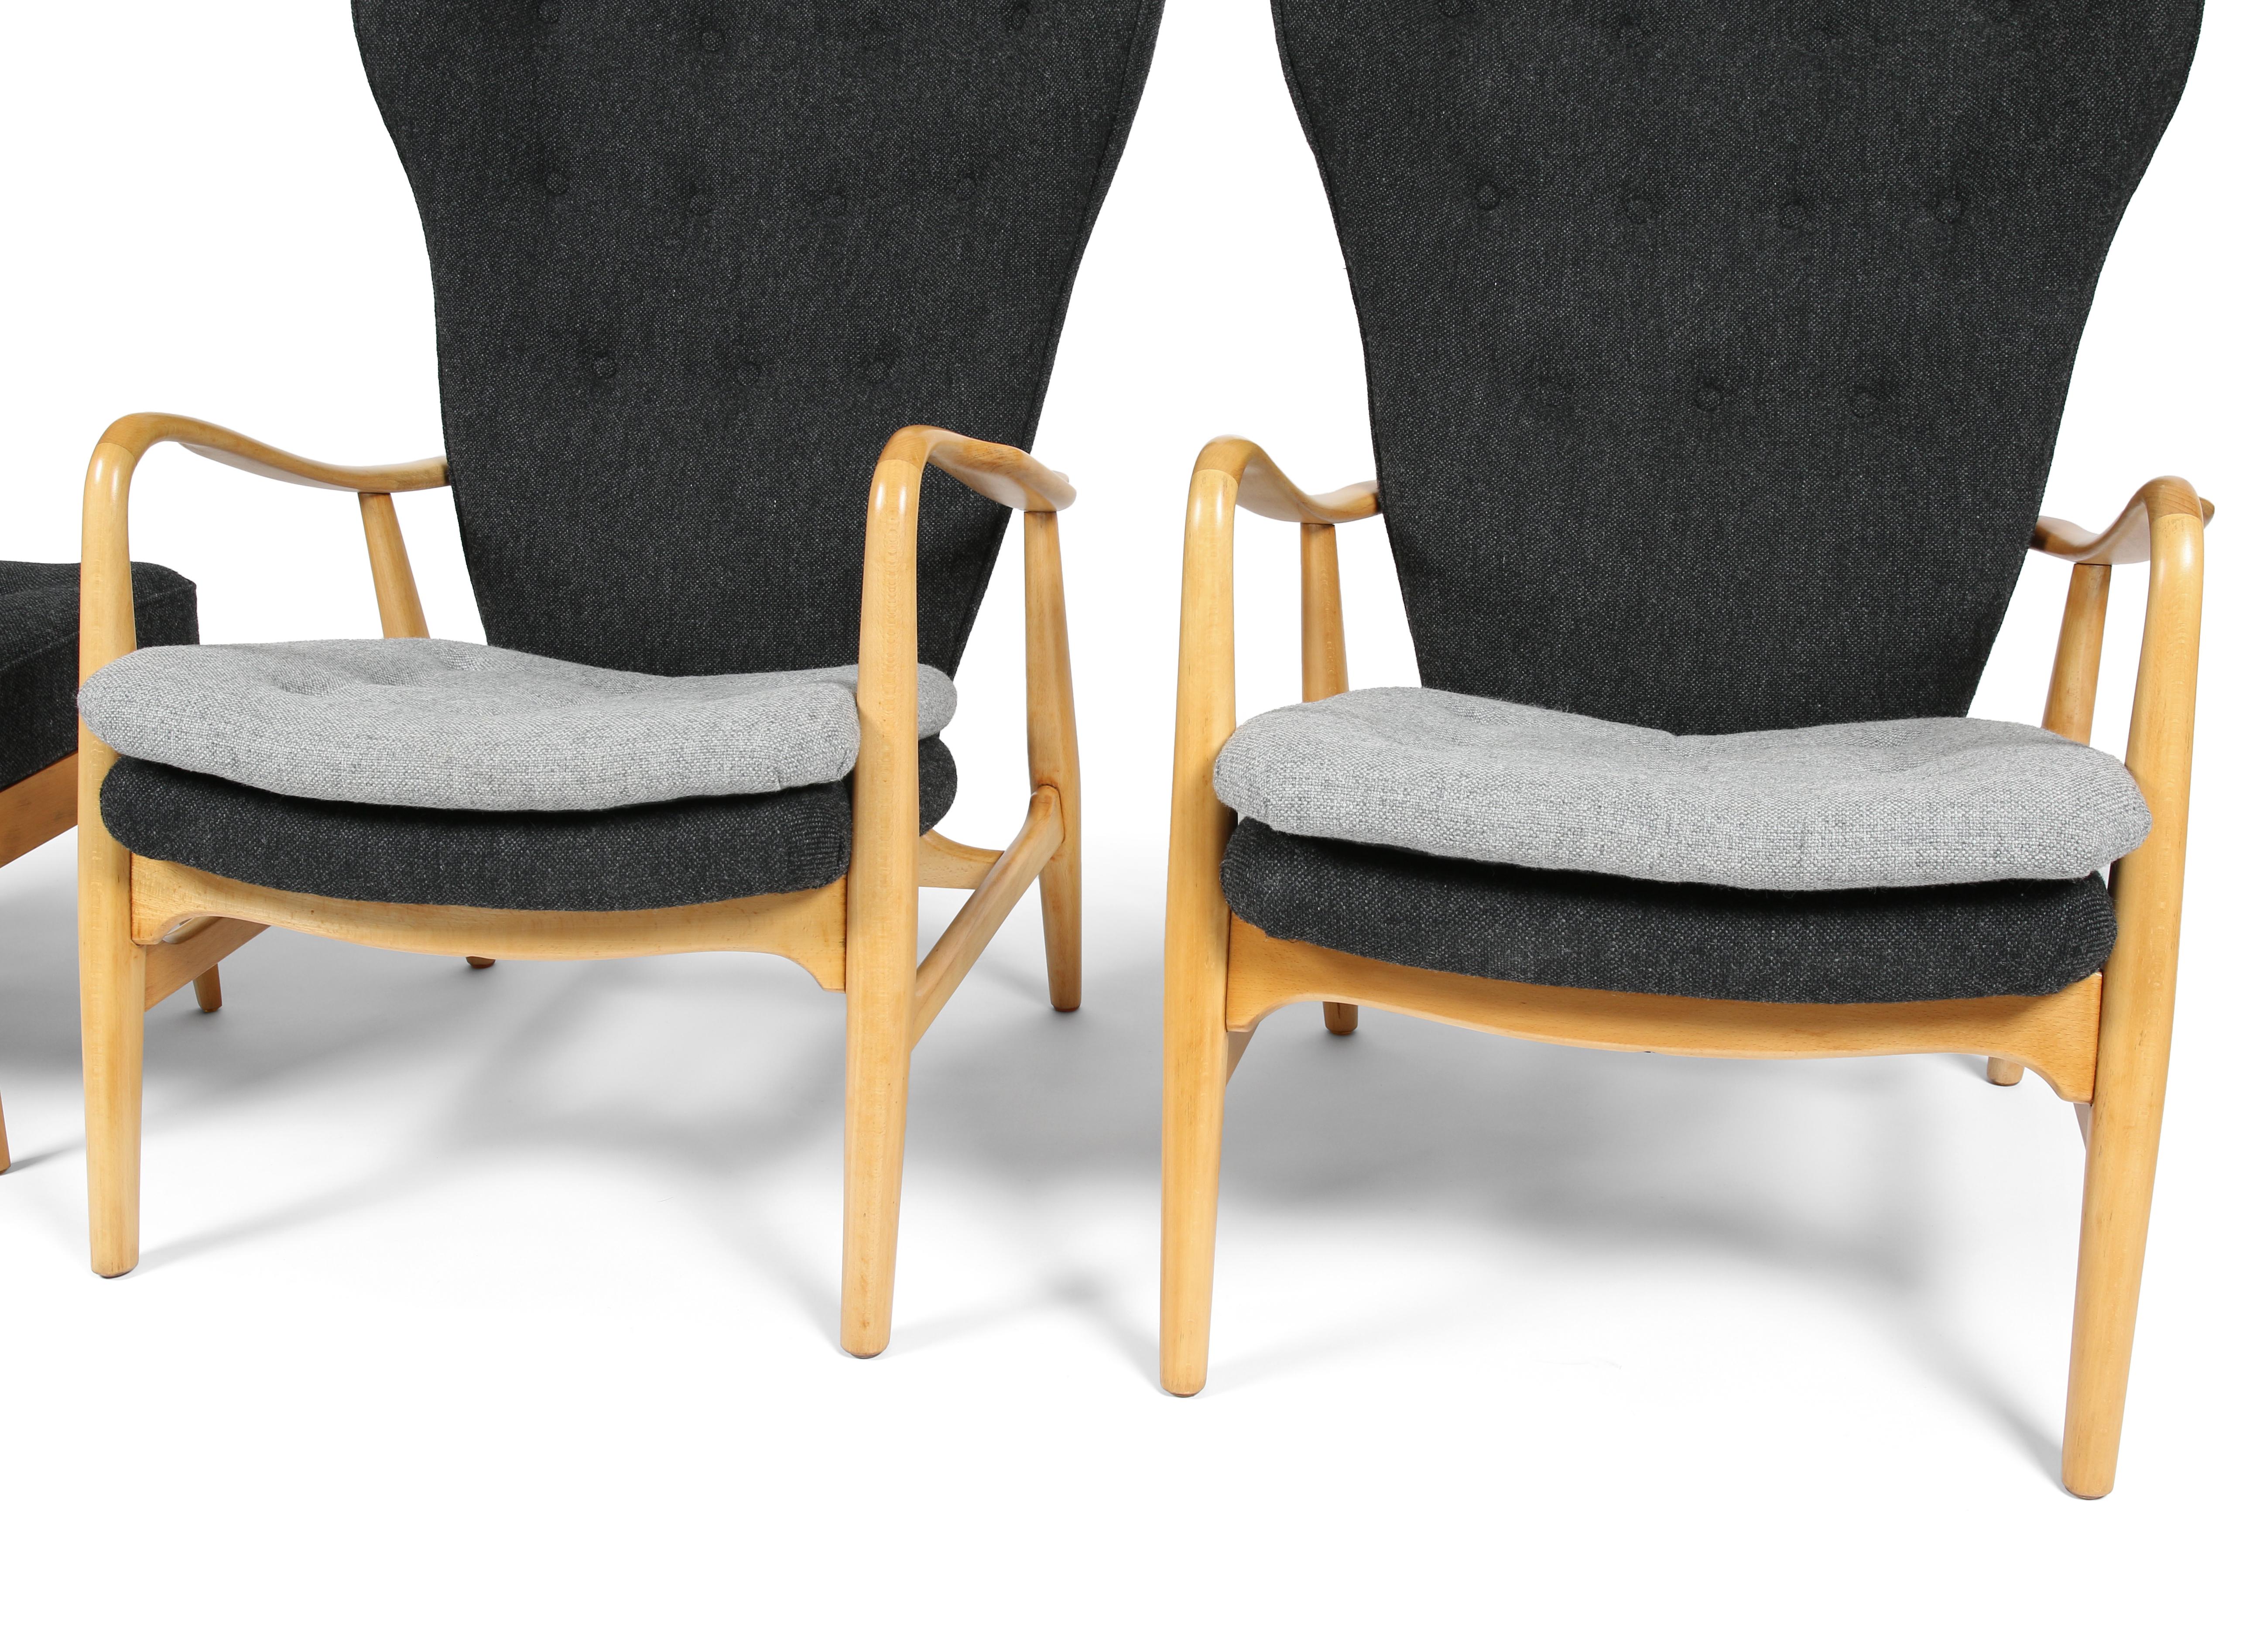 Voici une paire de fauteuils à dossier latéral modèle MS-4 avec ottoman, conçus par Henry Schubell et produits dans les années 1950 par Madsen et Schubell au Danemark (ce modèle a également été cédé sous licence à Vik & Blindheim en Norvège). Il